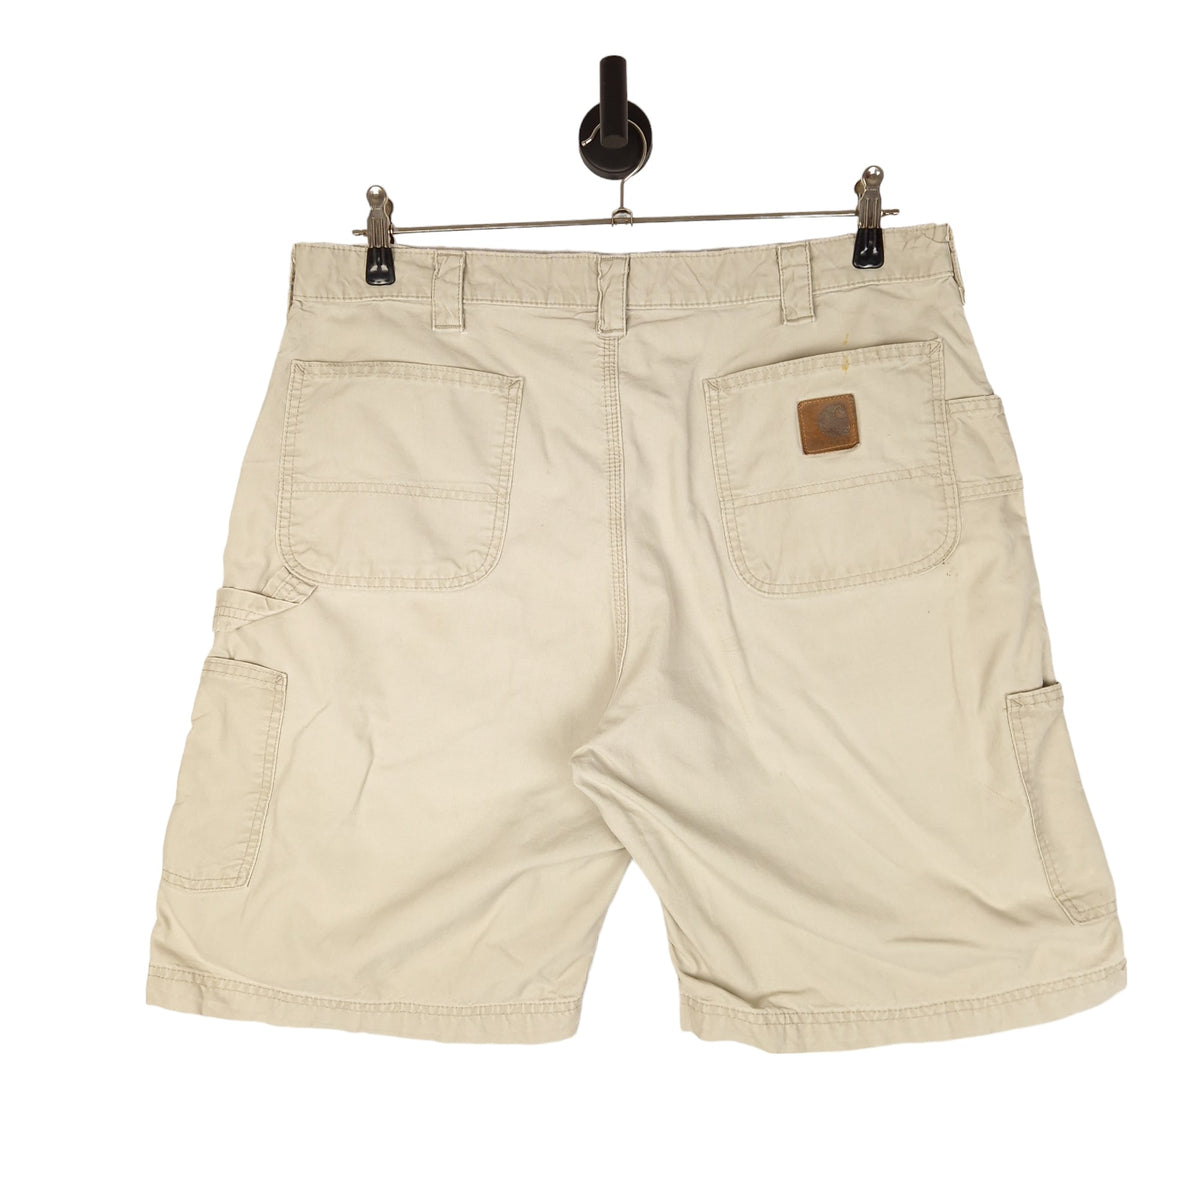 Y2K Carhartt Carpenter Shorts - Size W38